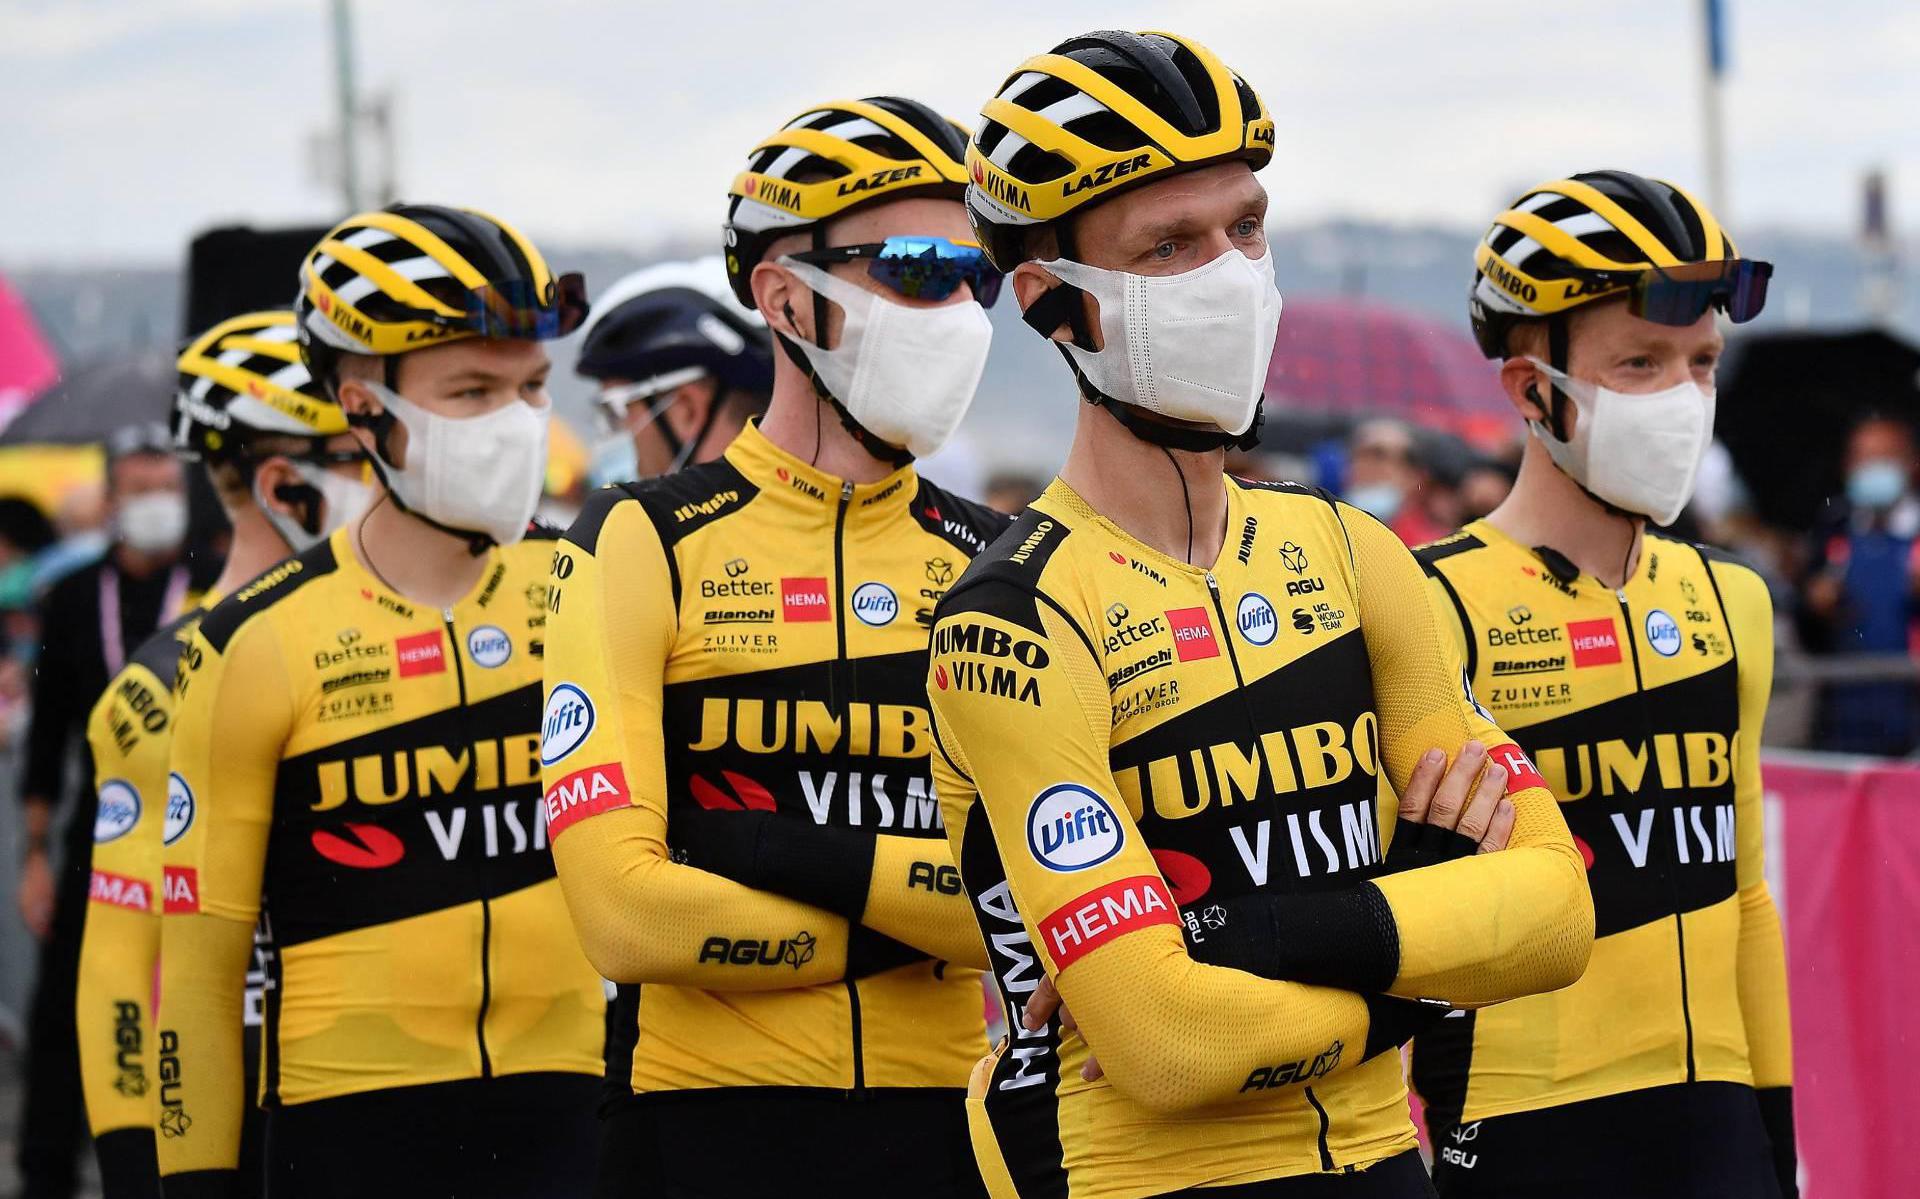 Wielerploeg Jumbo-Visma niet meer van start in Giro